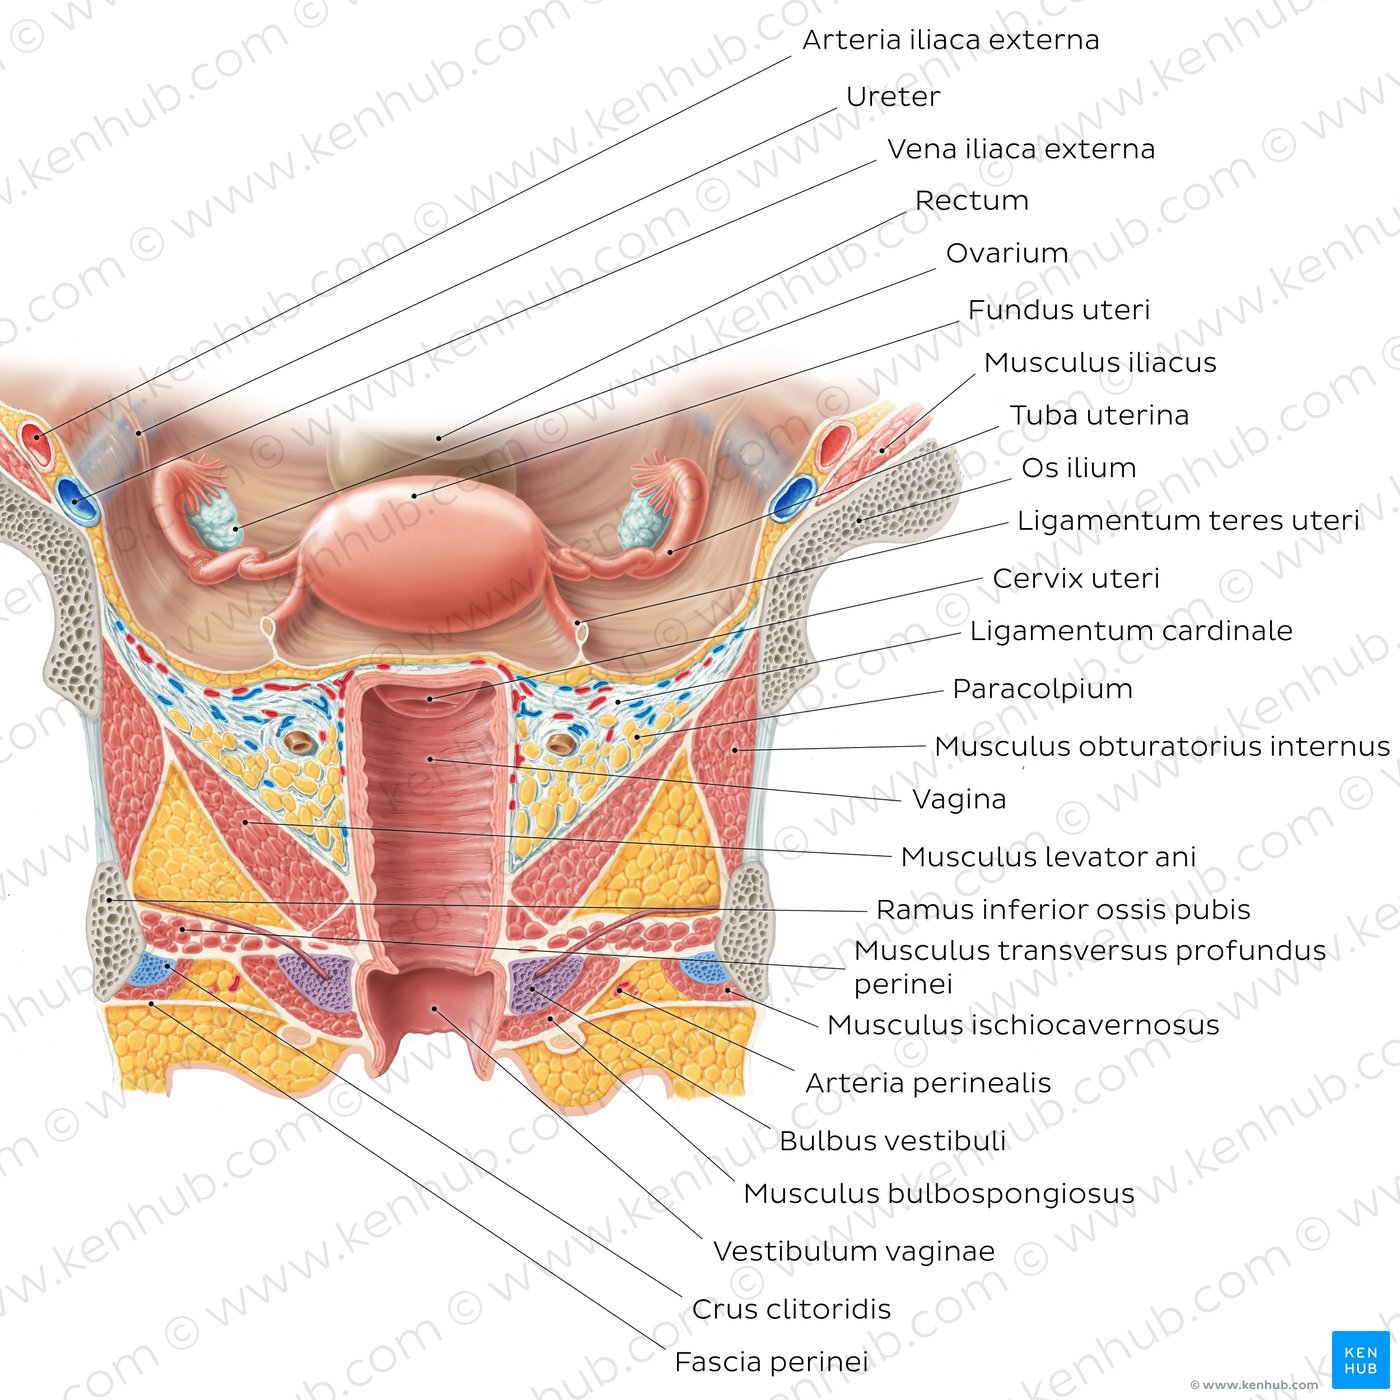 Strukturen von Uterus und Vagina in der ventralen Ansicht